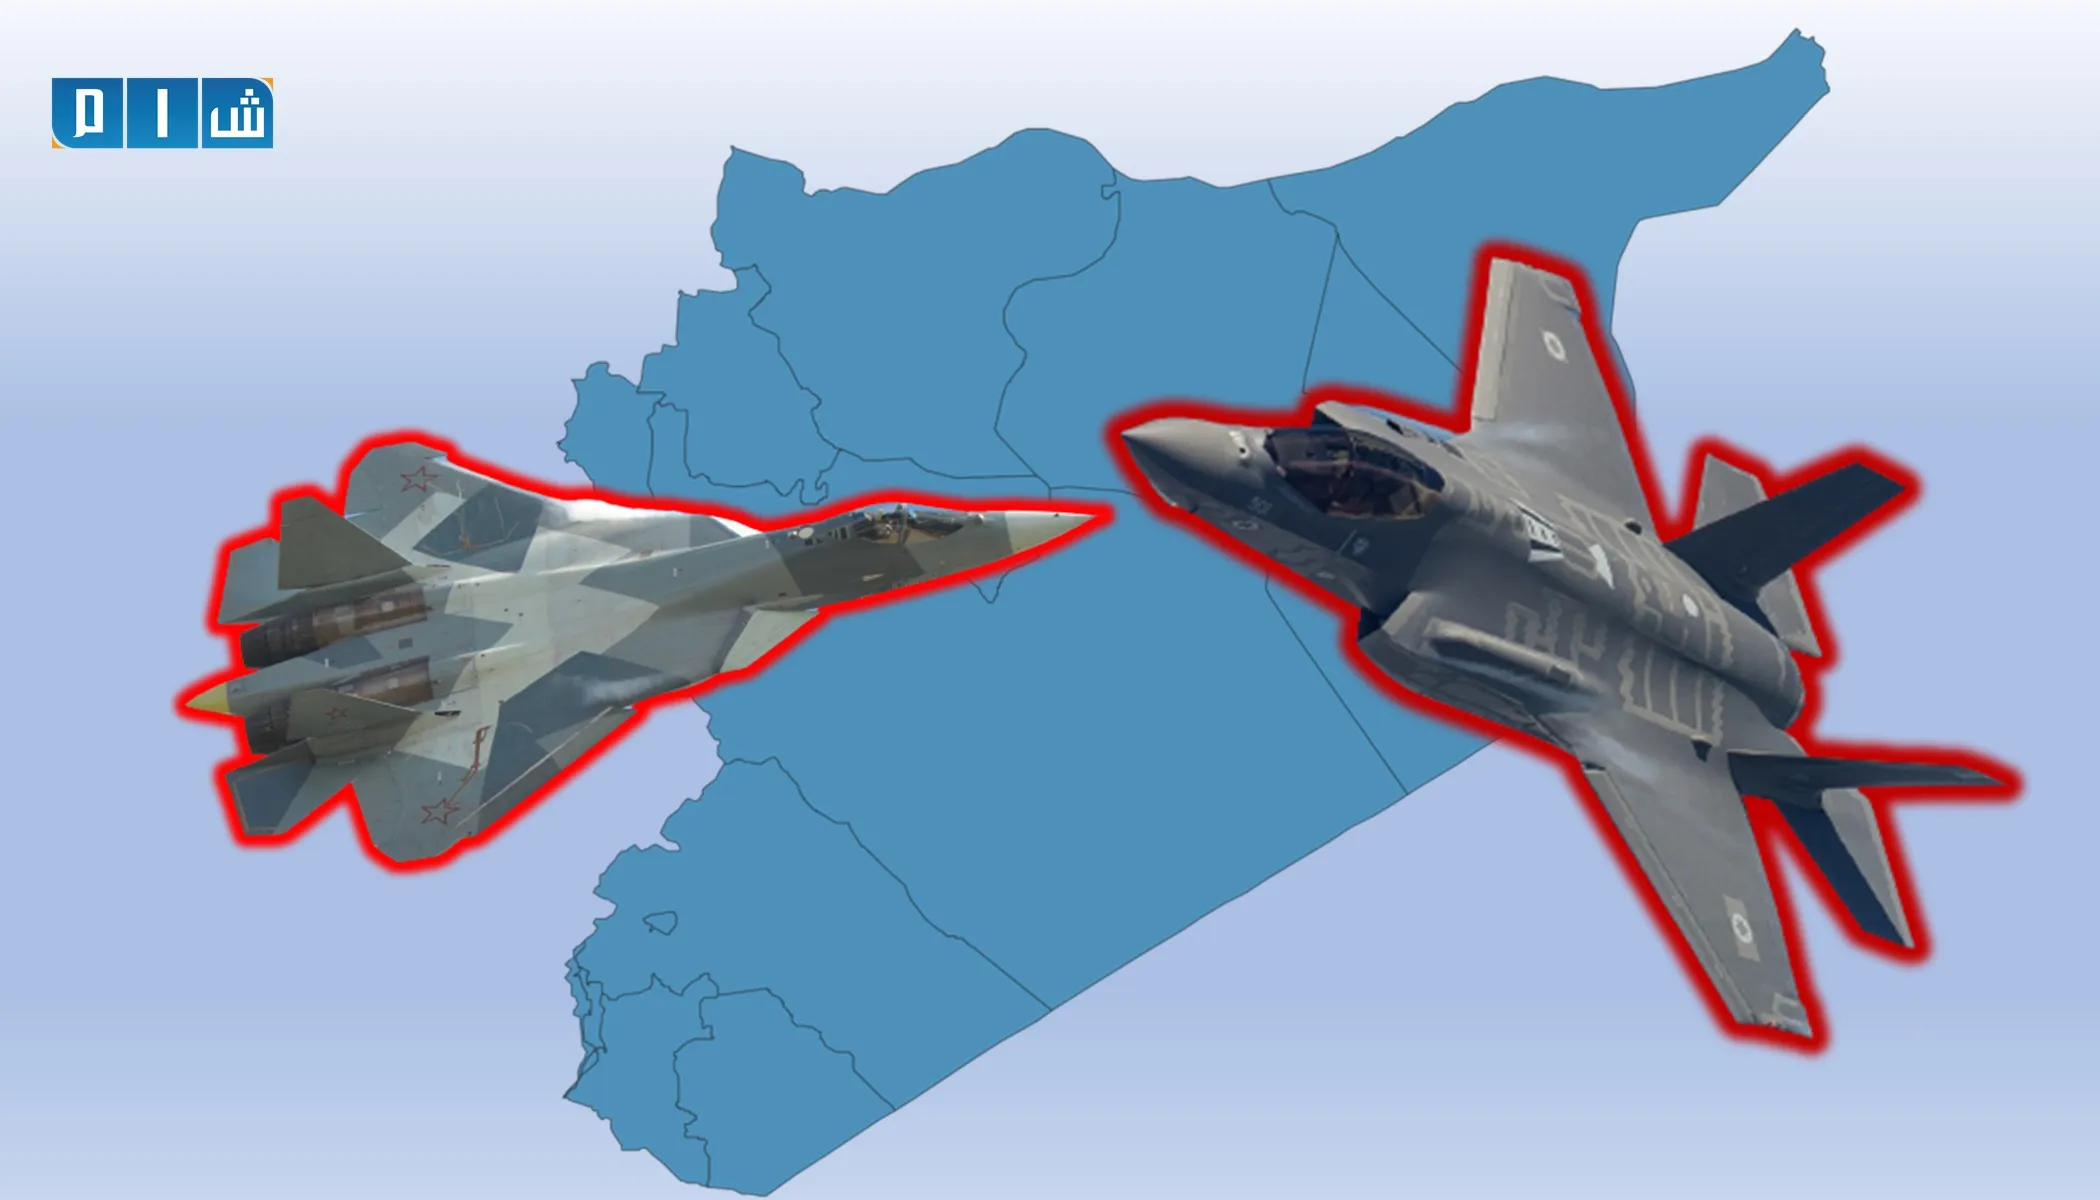 "المصالحة الروسي" يتهم "واشنطن" بانتهاك مذكرة السلامة الجوية 315 مرة في سوريا خلال شهر